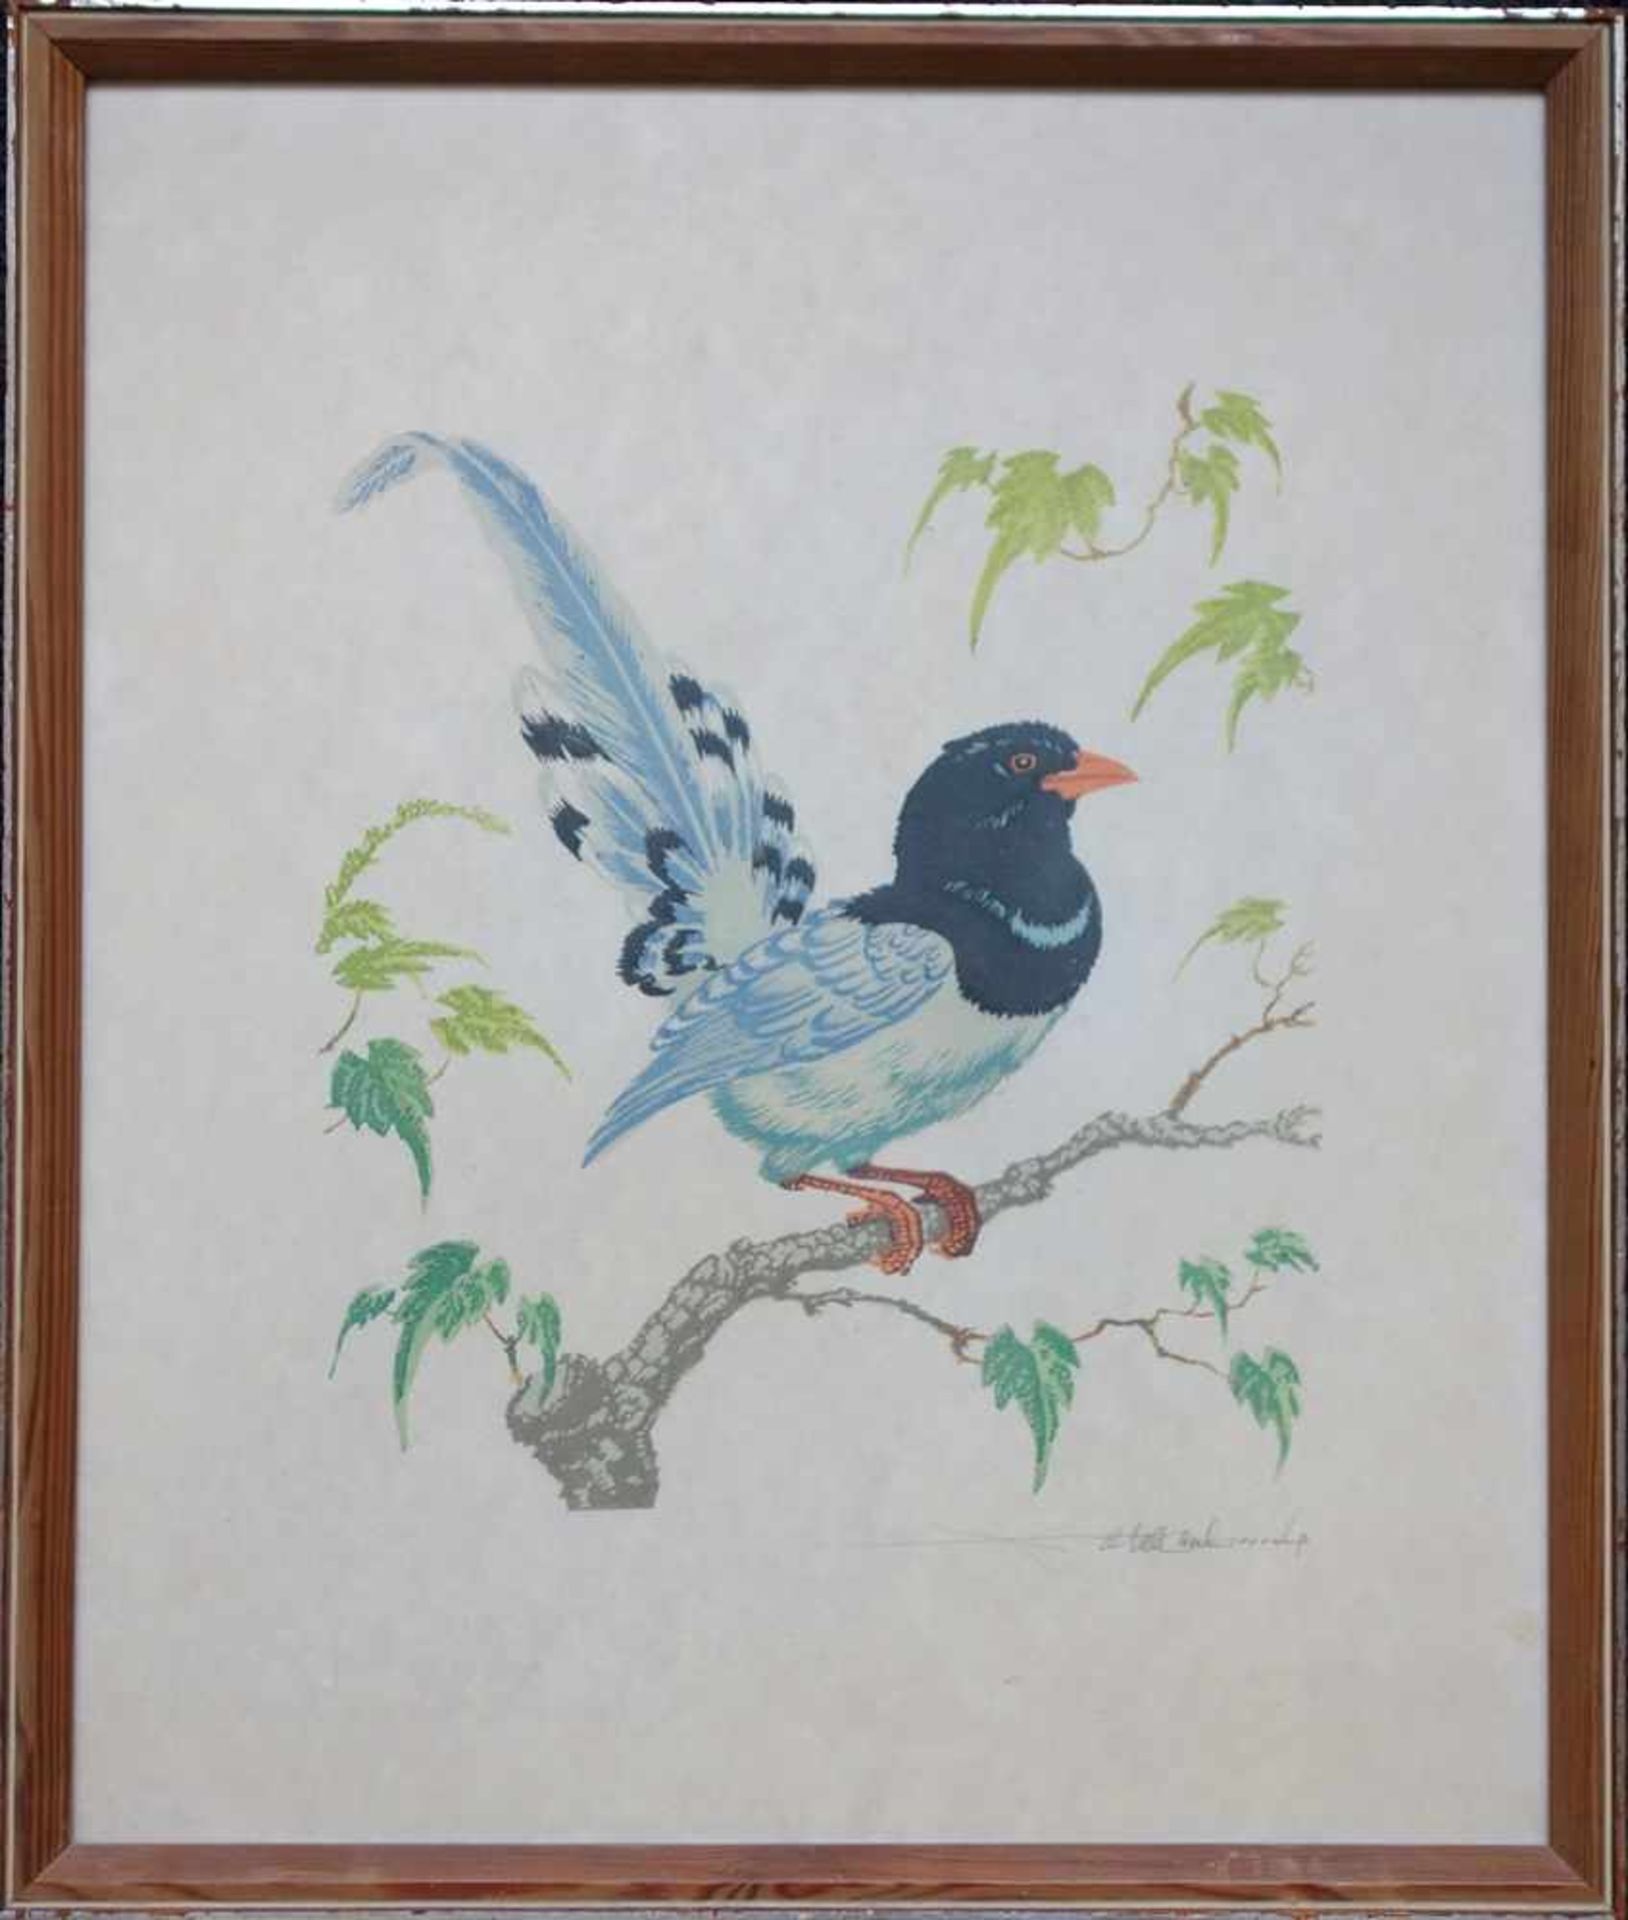 Farbholzschnitt "Paradiesvogel", um 1950, u.r. undeutl. signiert, verglast gerahmt, HB 45,7*38,